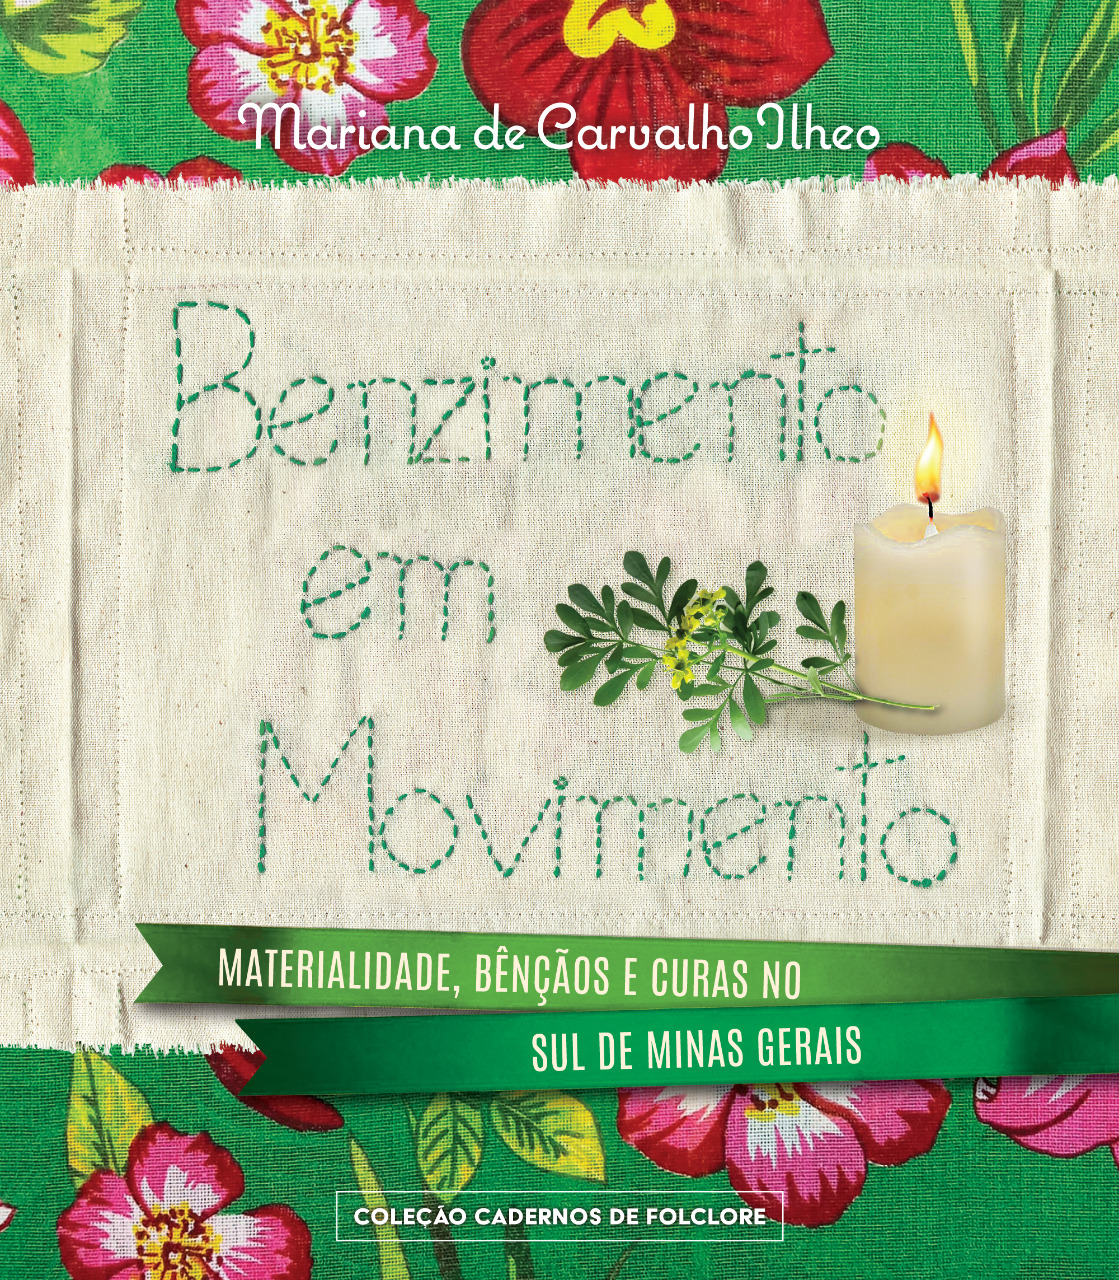 28º Benzimento em Movimento: Materialidade, Bênçãos e Curas no Sul de Minas Gerais